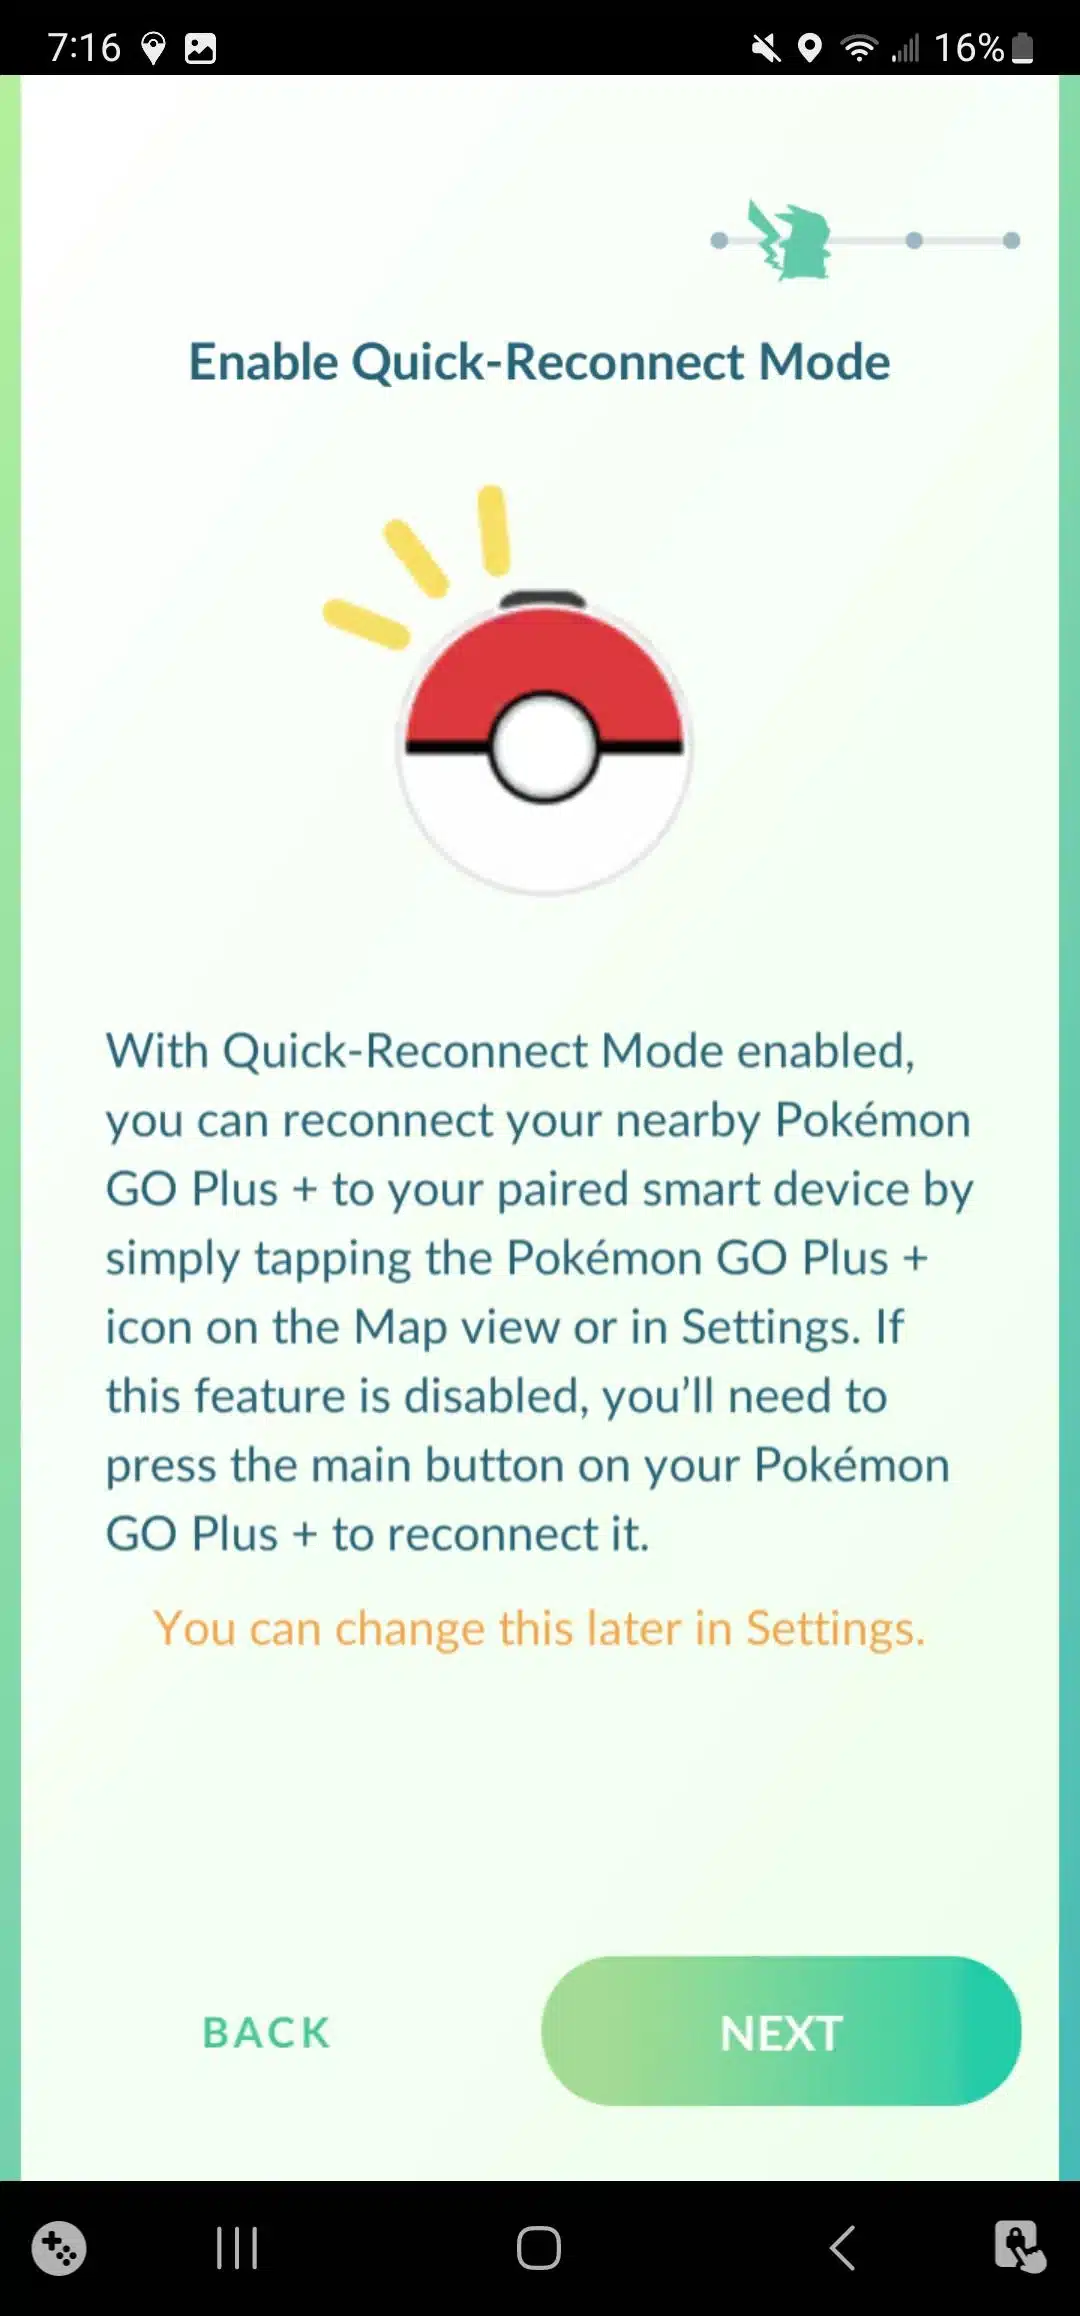 Pokémon GO Plus+: An Honest Review